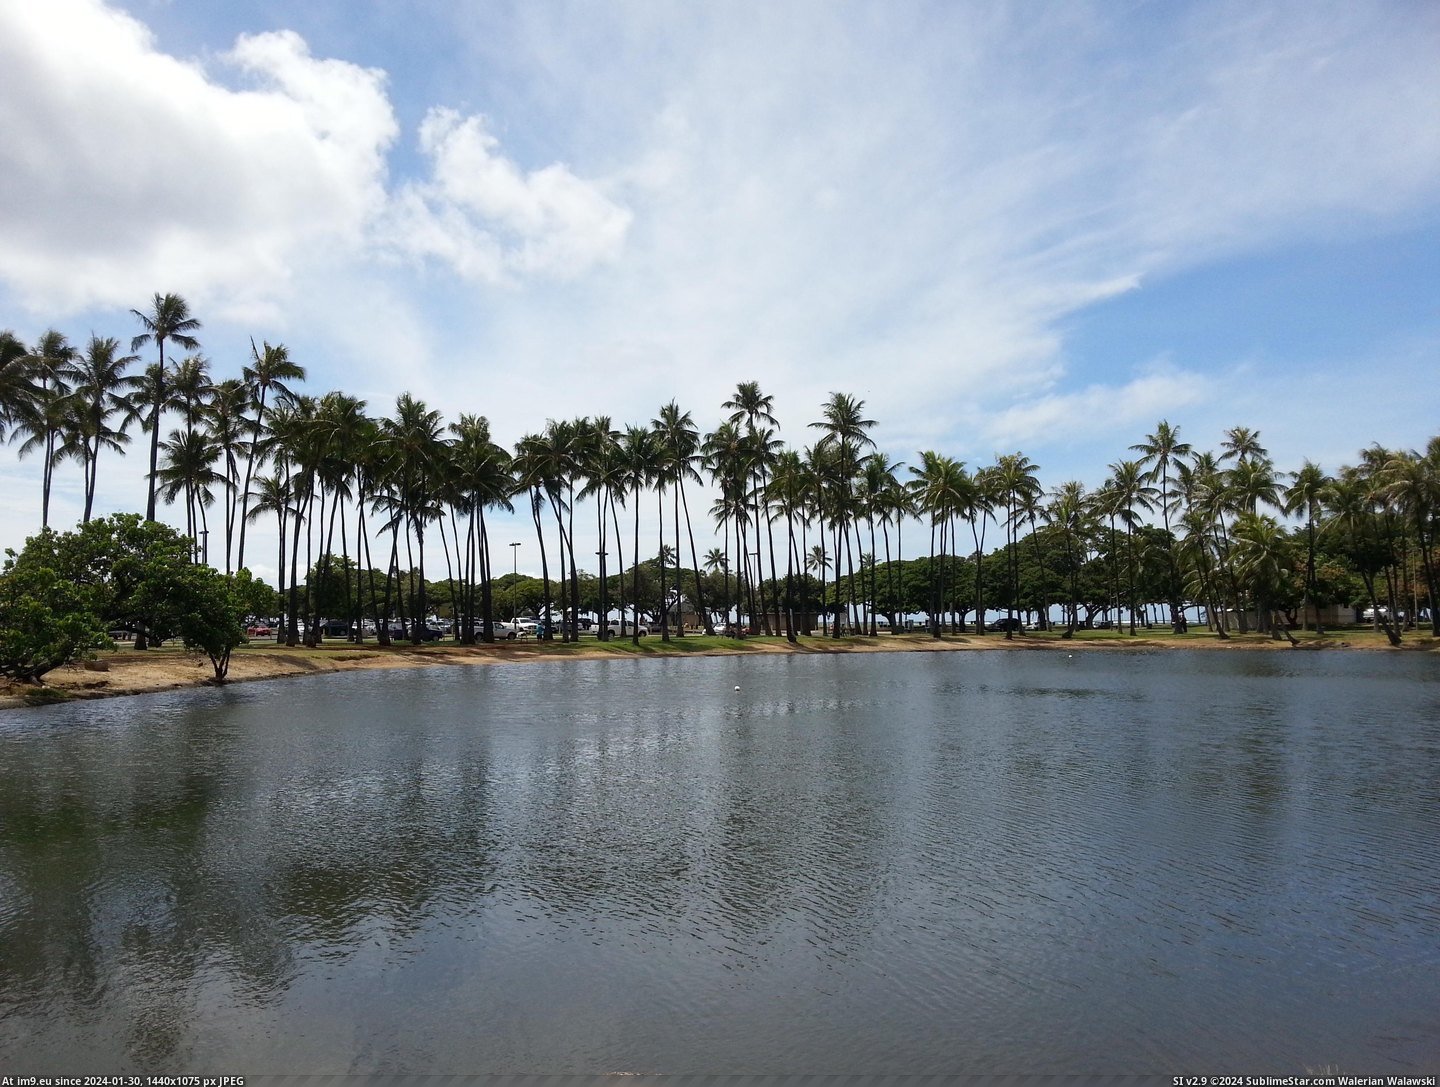  #Image  20131002_115937 Pic. (Изображение из альбом Hawaii))